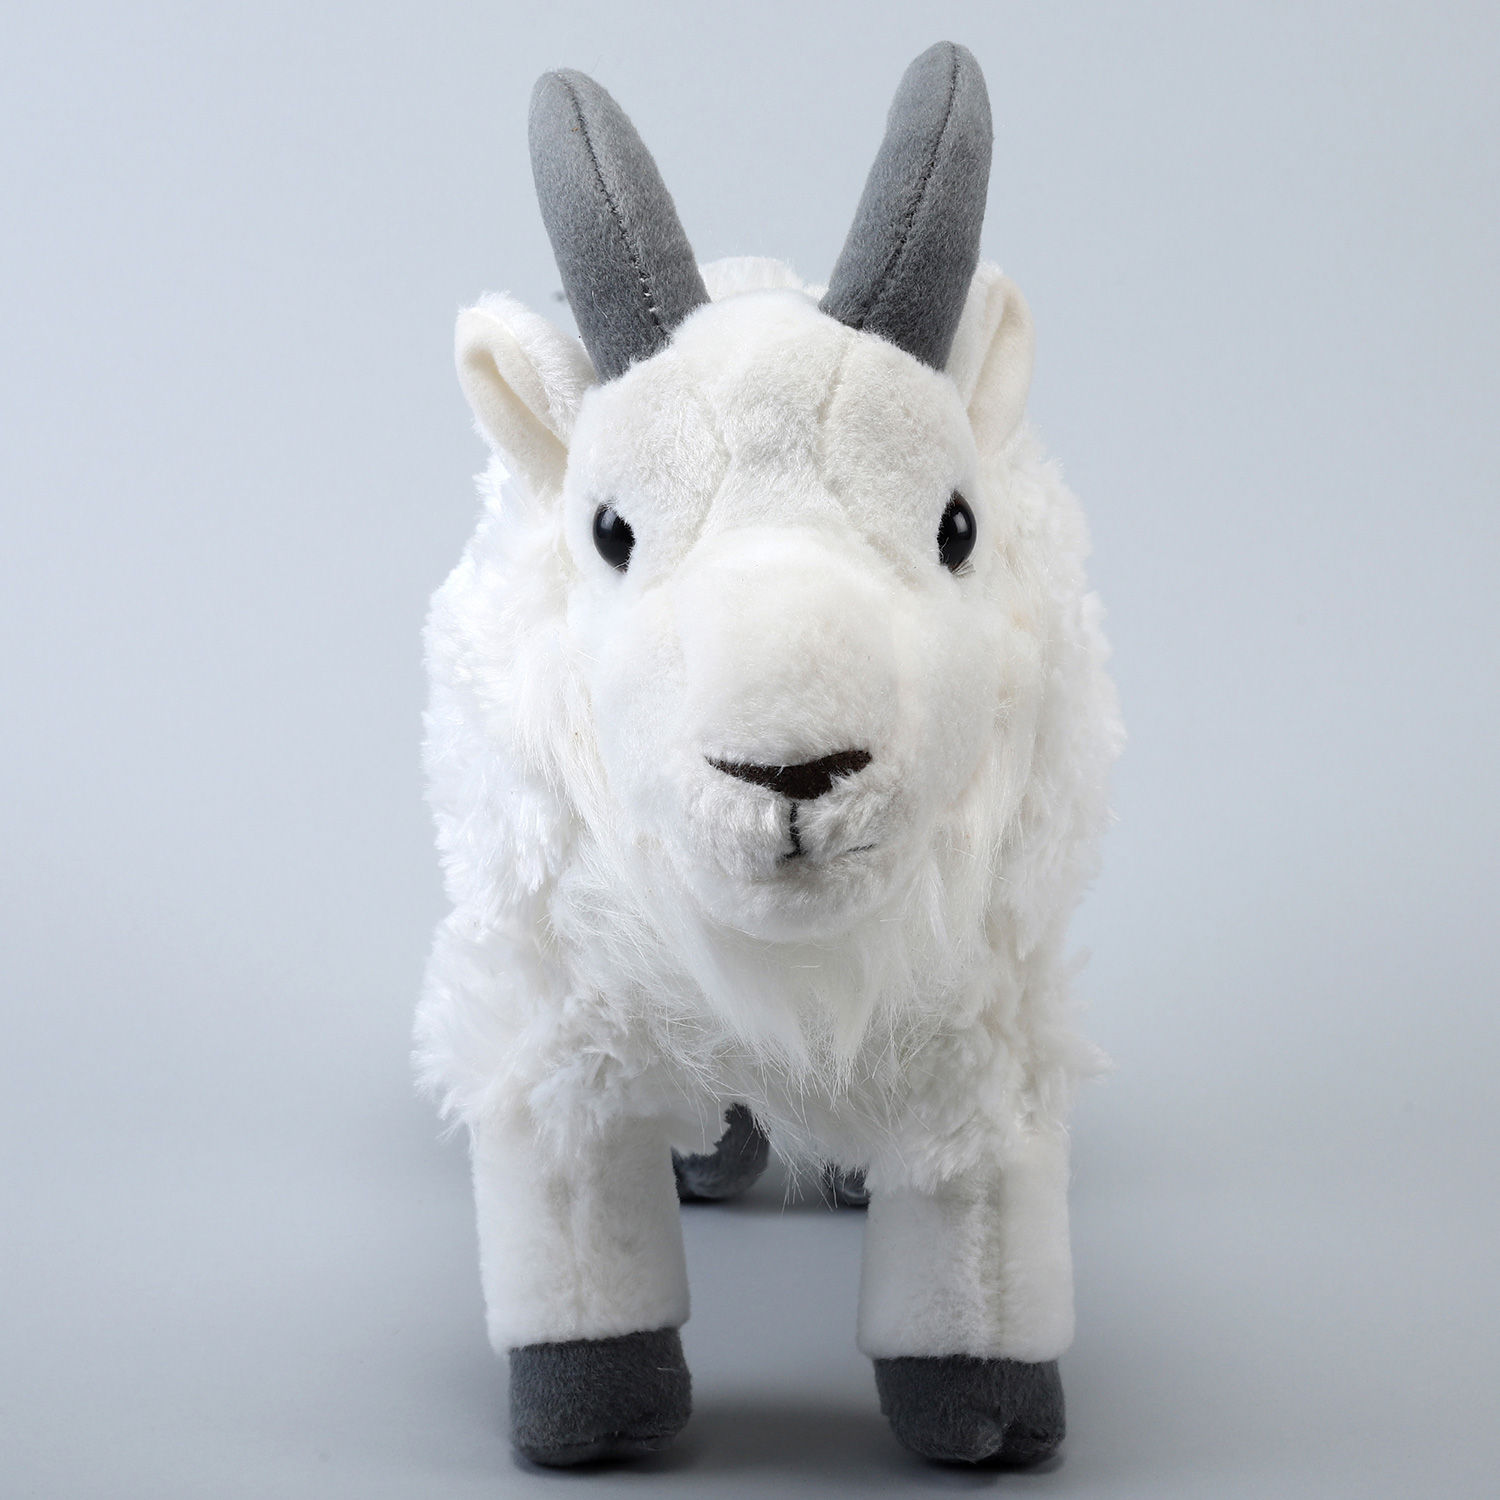 Buy/Send Wild Republic White Plush Mountain Goat Soft Toy Online- FNP